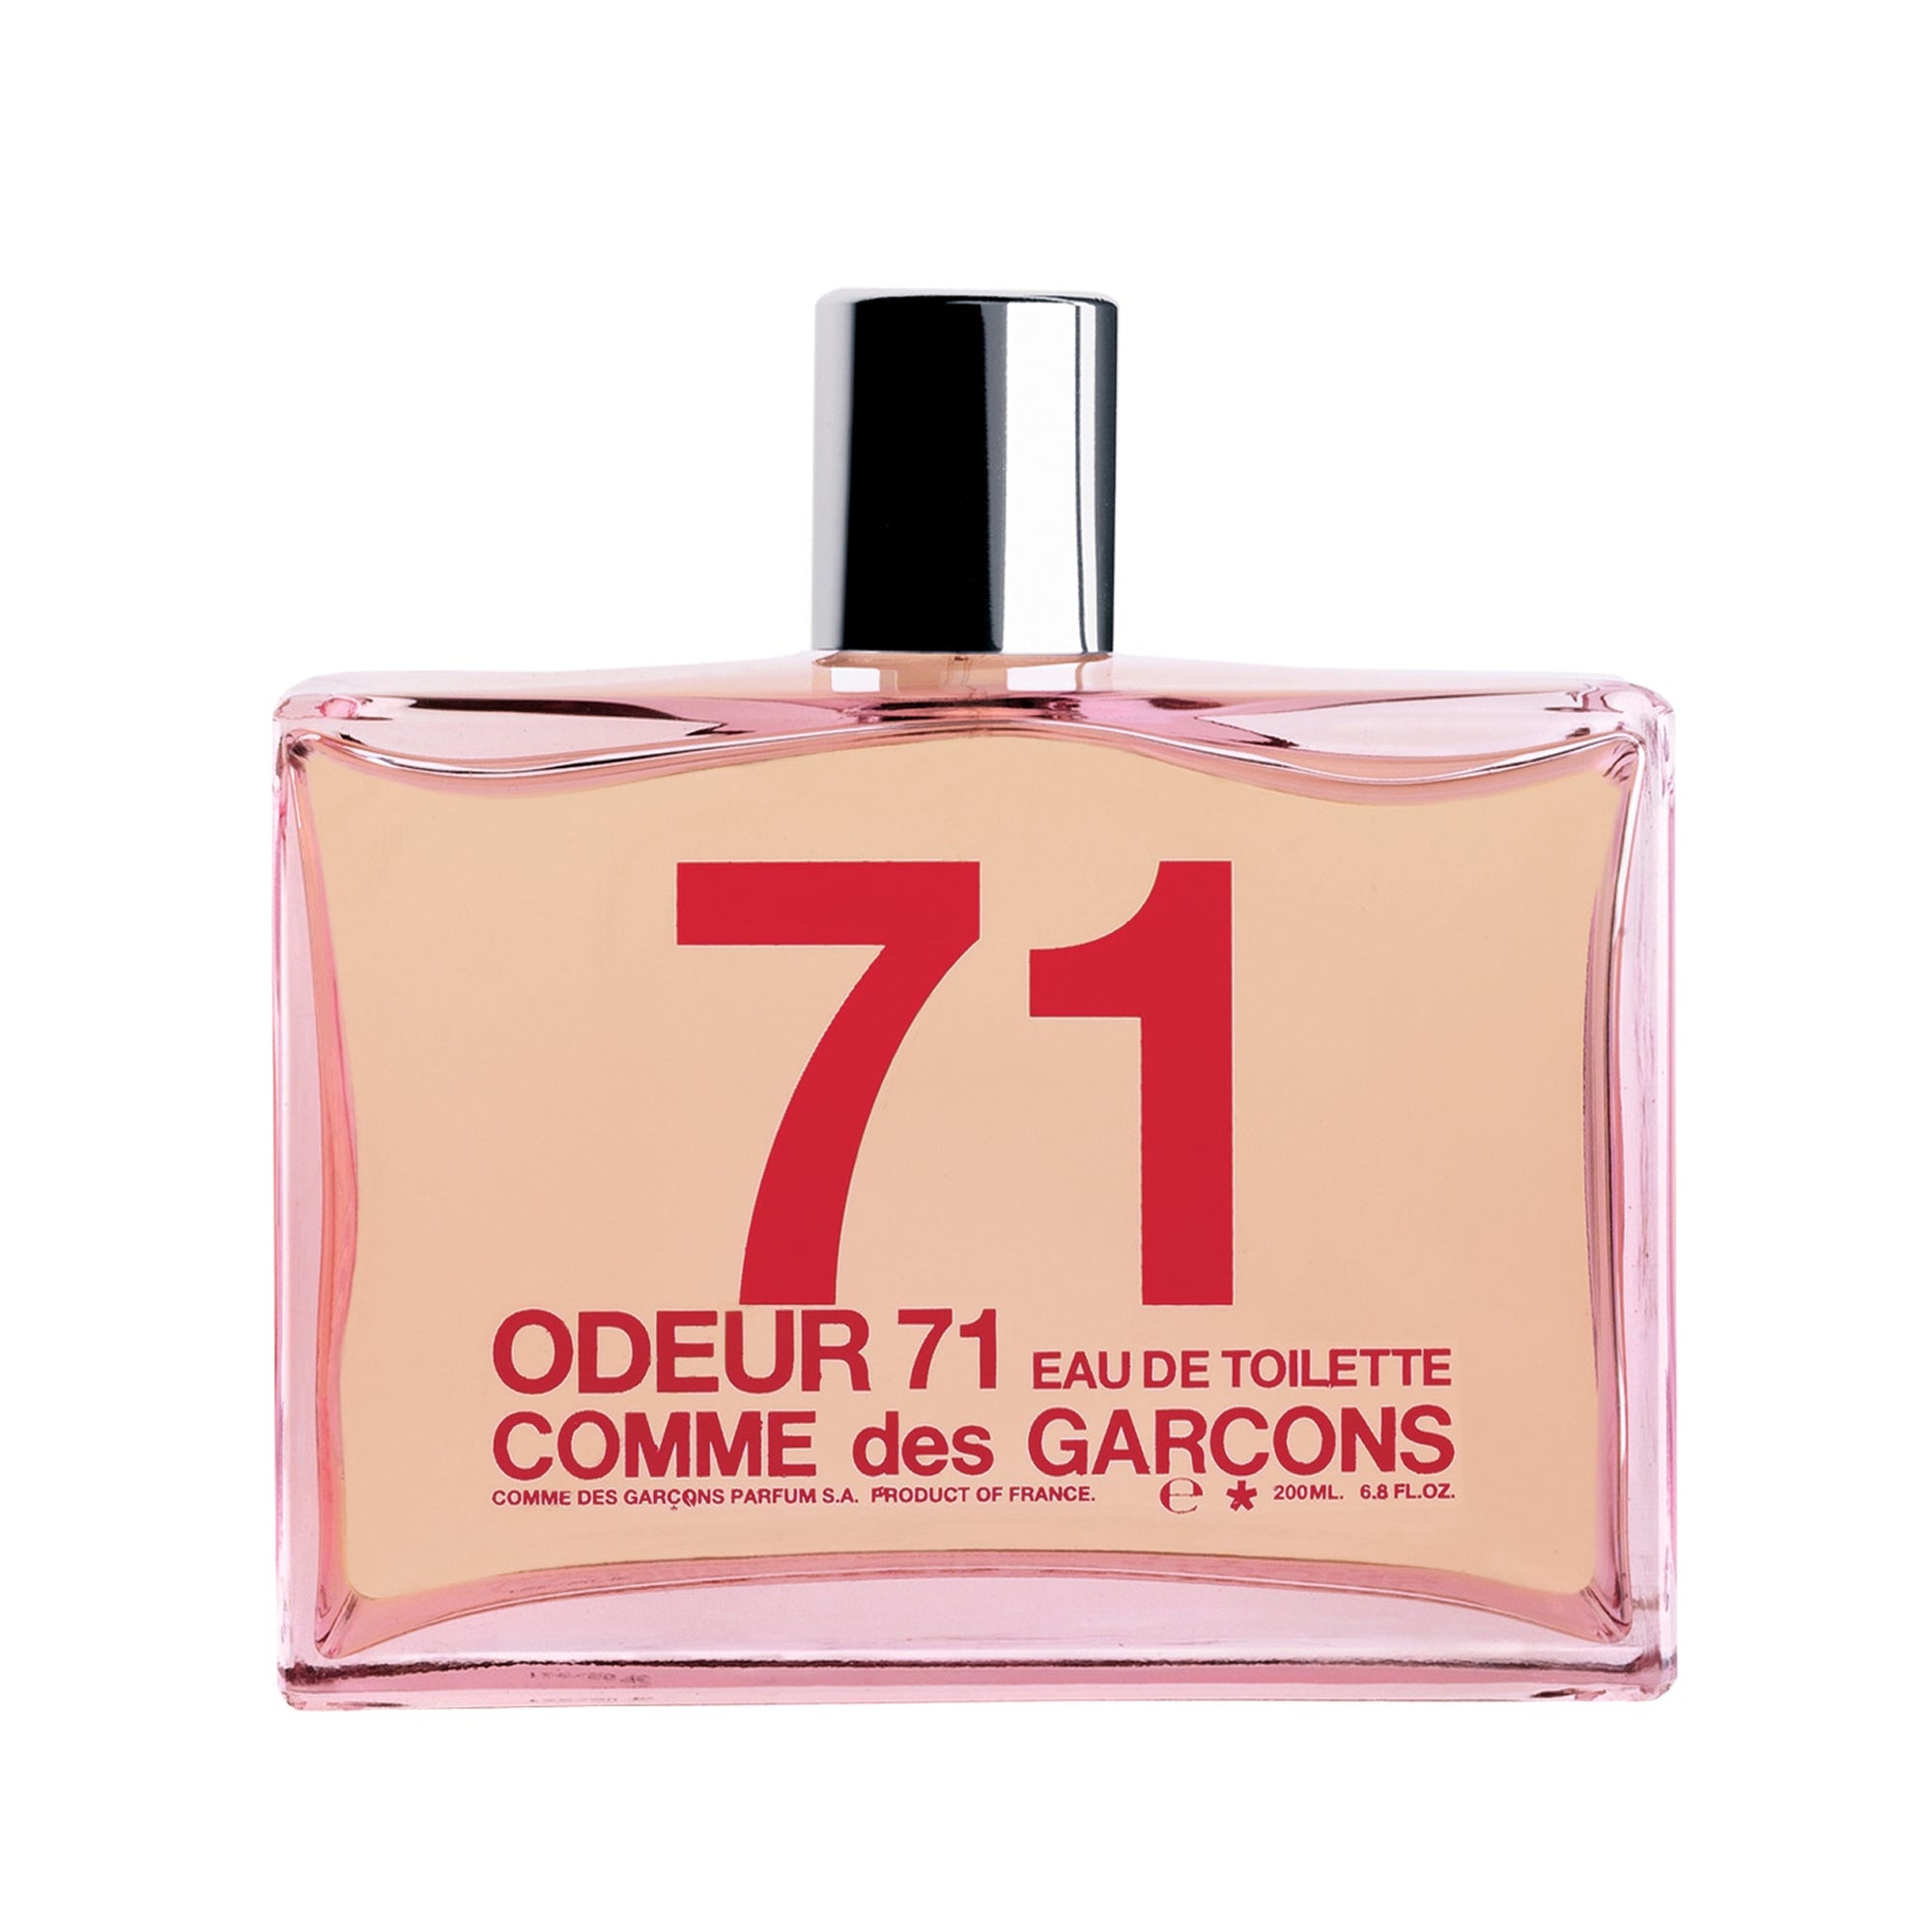 CDG Parfum - Odeur 71 Eau de Toilette - (200ml natural spray) view 1